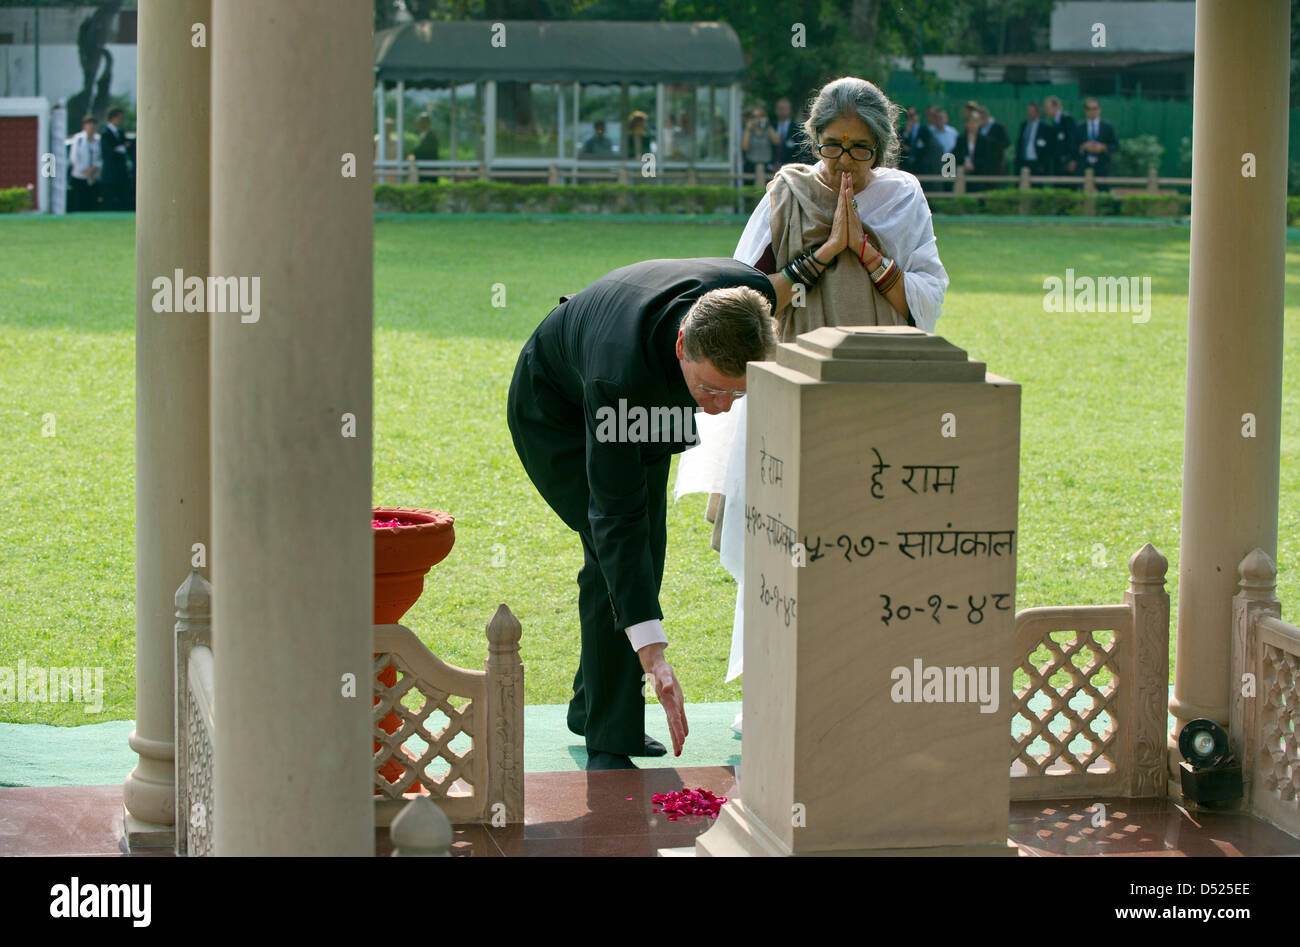 Le ministre des Affaires étrangères allemand Guido Westerwelle visites Gandhi Smriti à New Delhi, Inde, 19 octobre 2010. Photo : SOEREN STACHE Banque D'Images